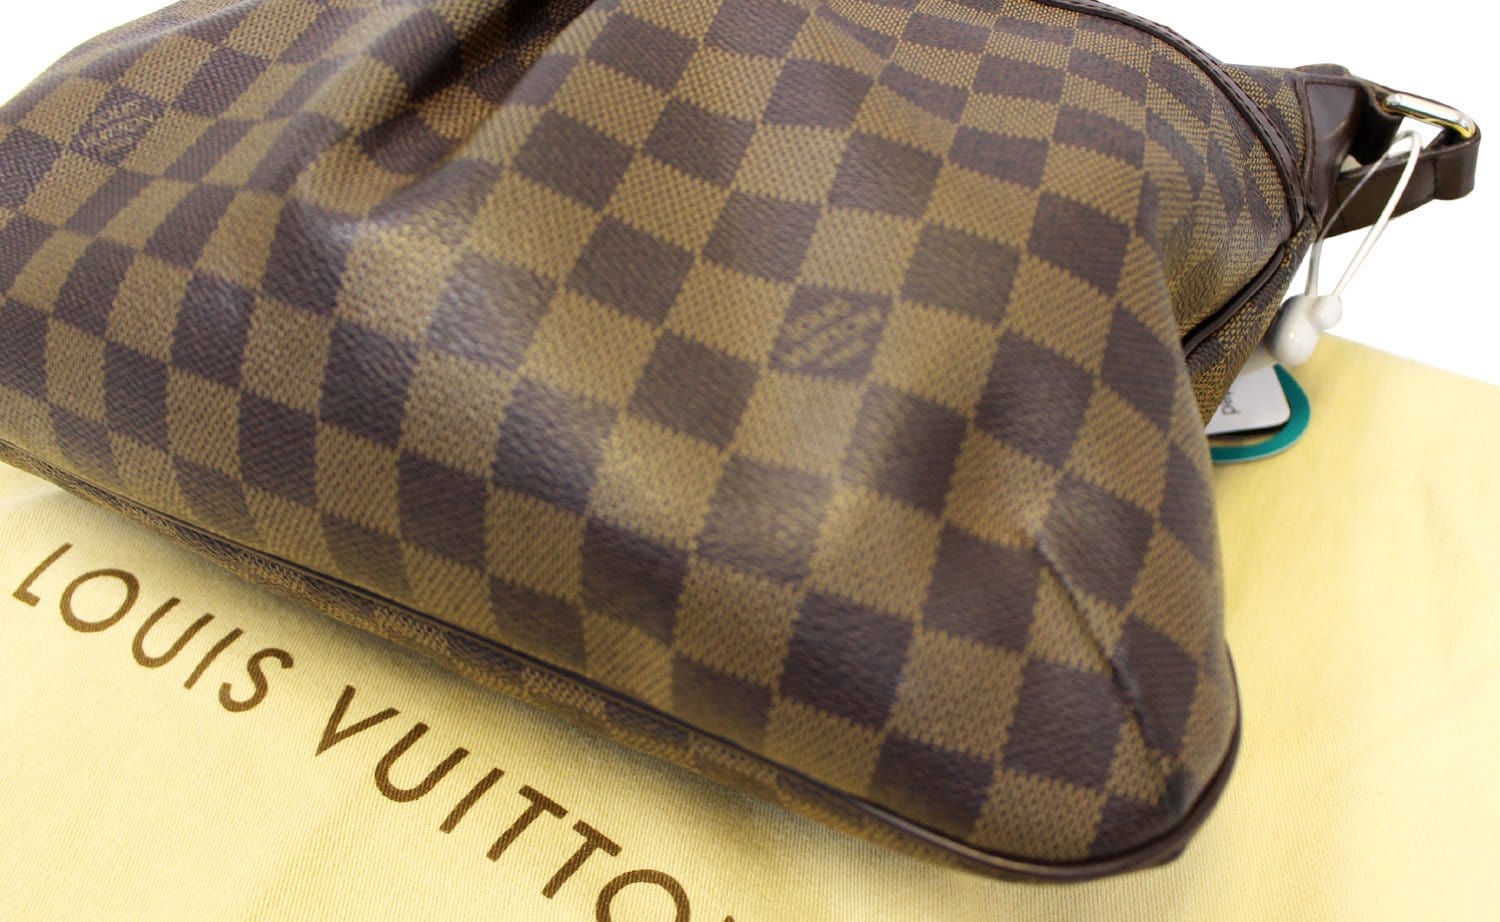 Louis Vuitton N42251 Bloomsbury PM Damier Canvas Crossbody / Messenger Bag  (DU4029) - The Attic Place